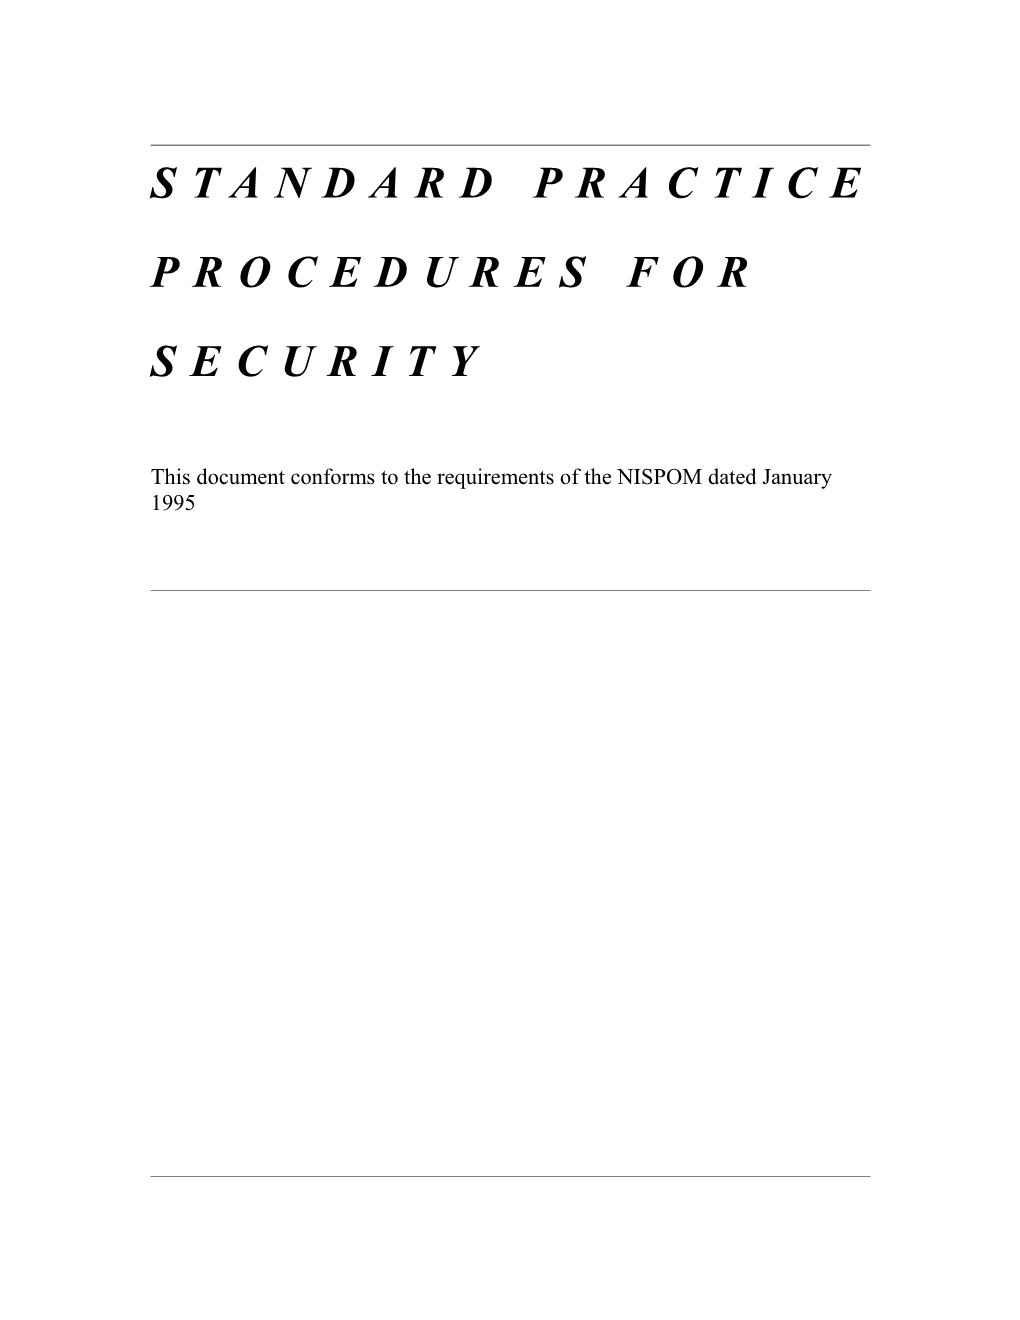 Standard Practice Procedures for Security